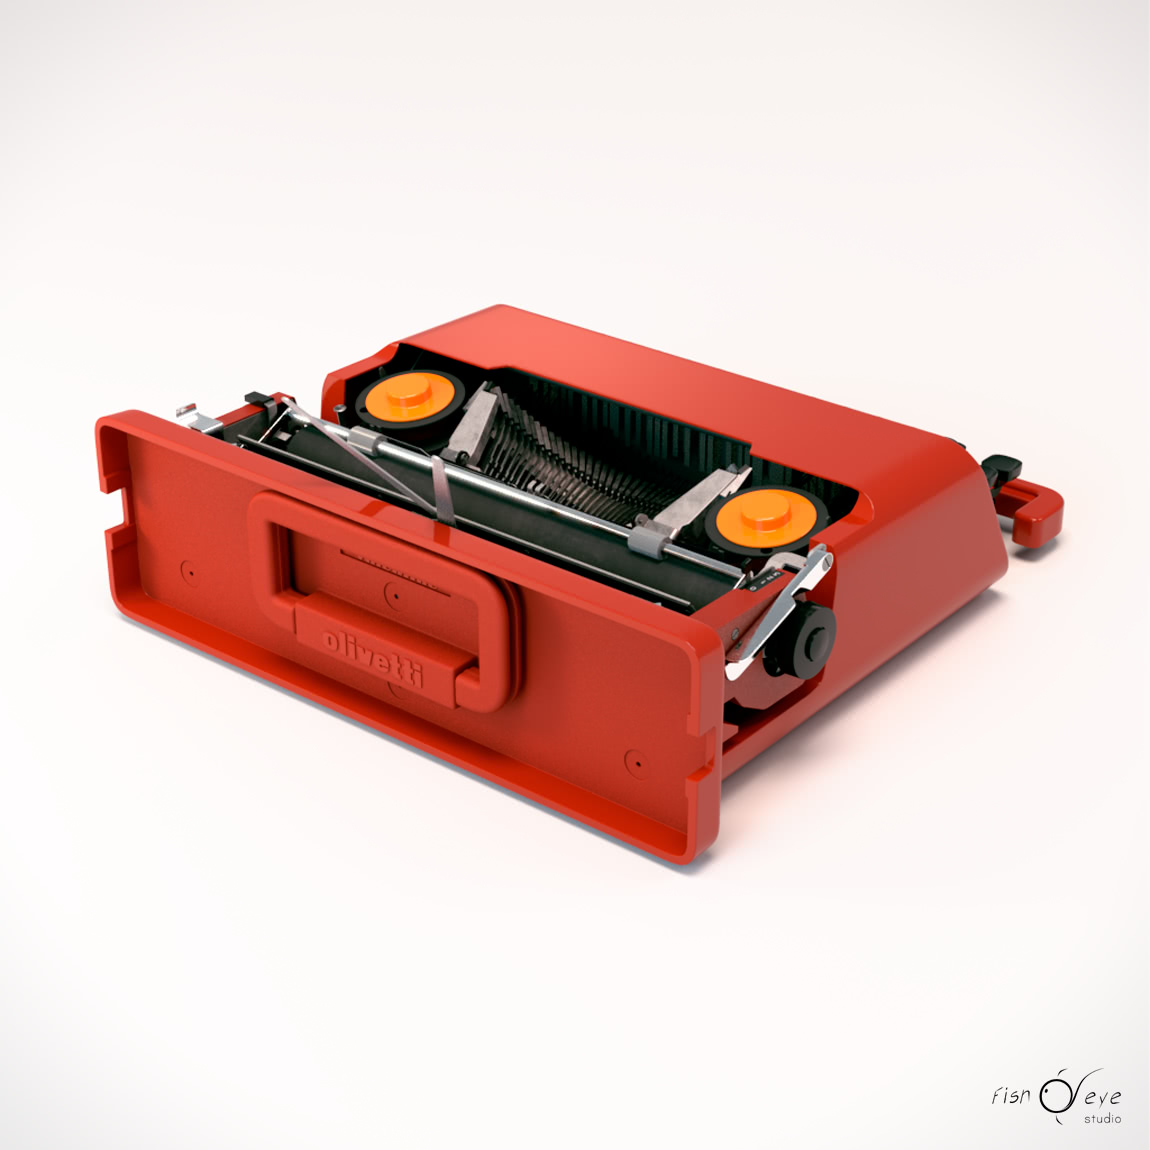 3D model of the Olivetti Valentine typewriter 05